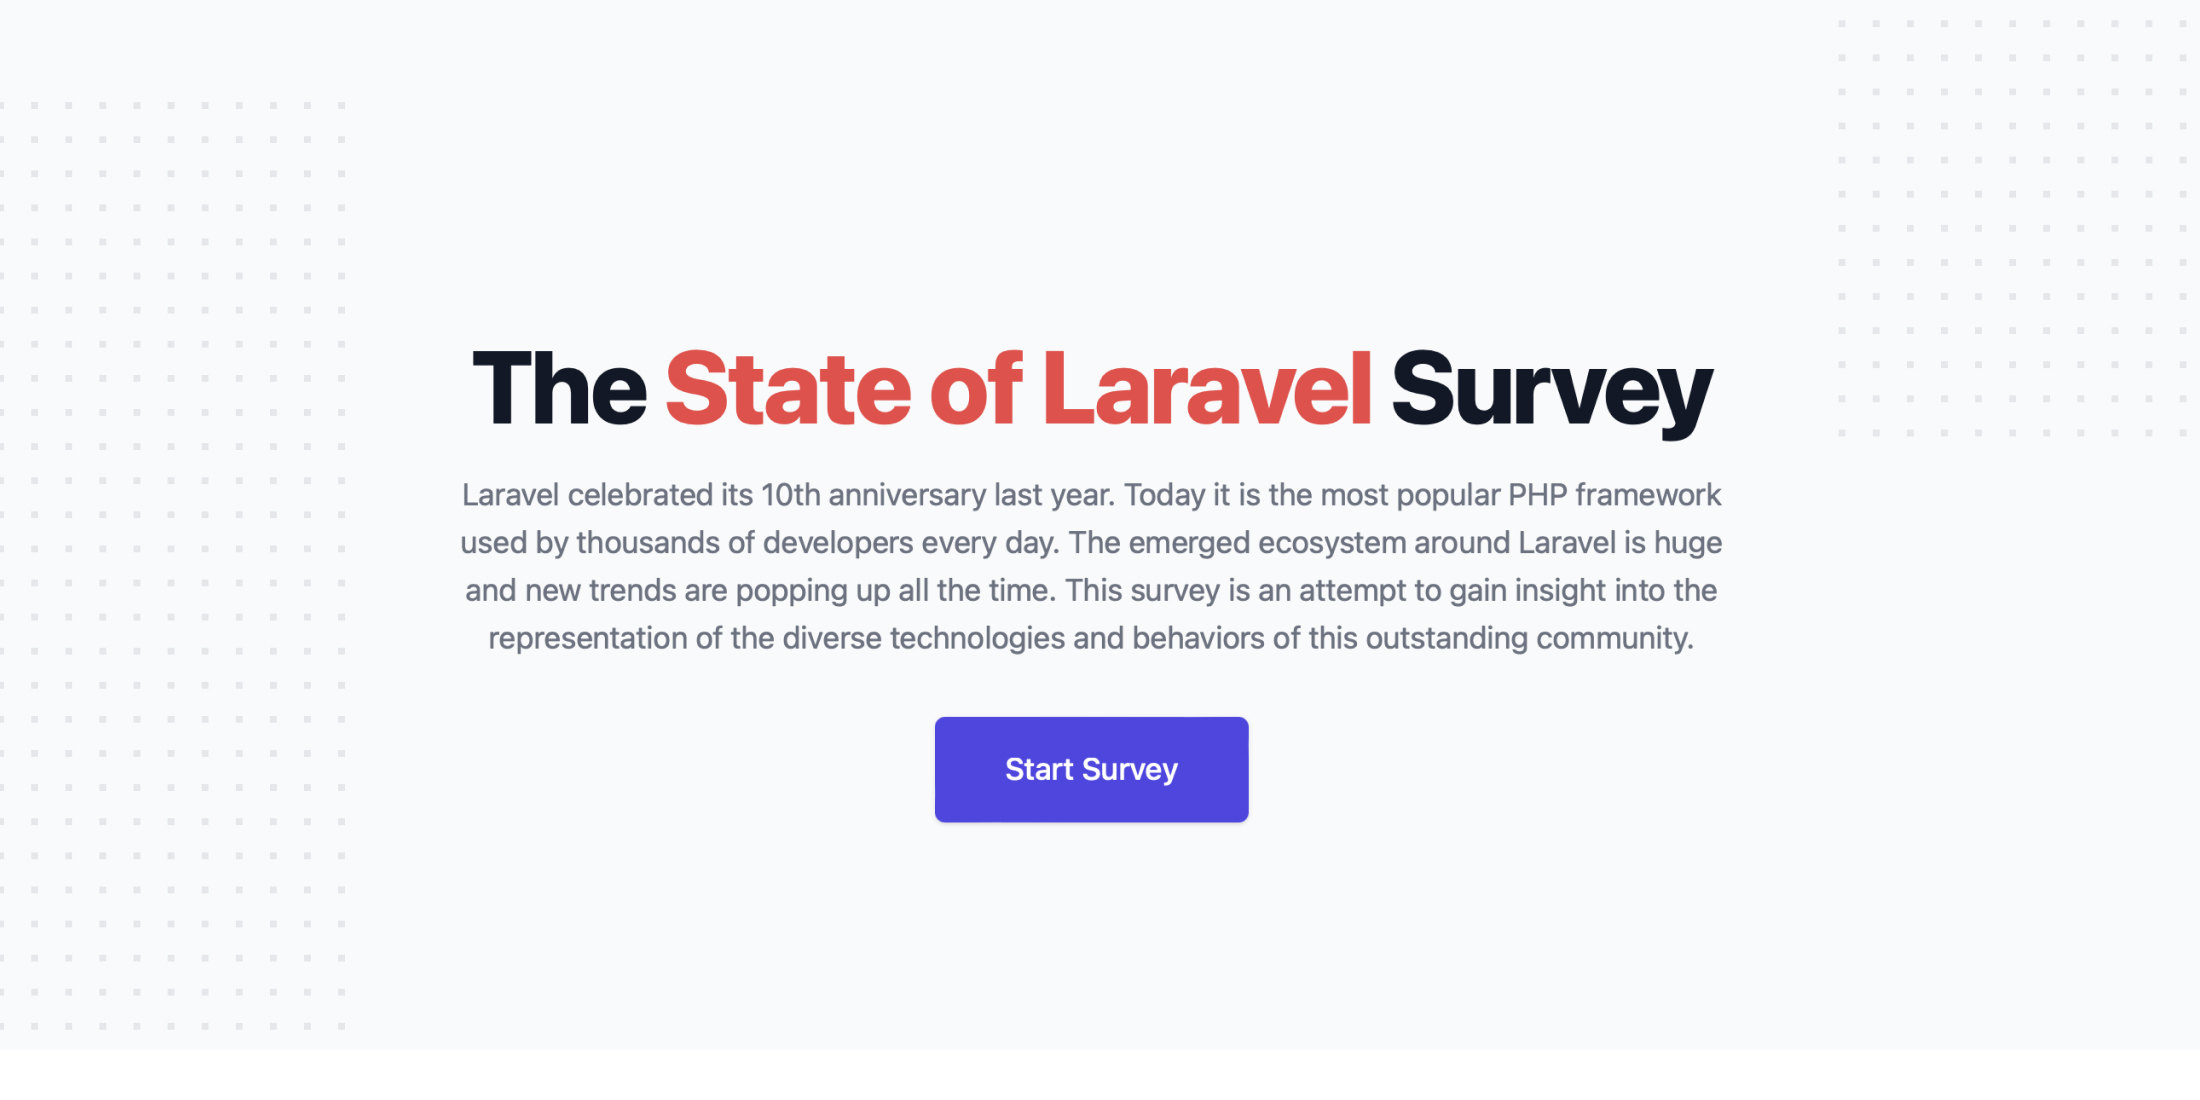 The State of Laravel Survey 2022 image